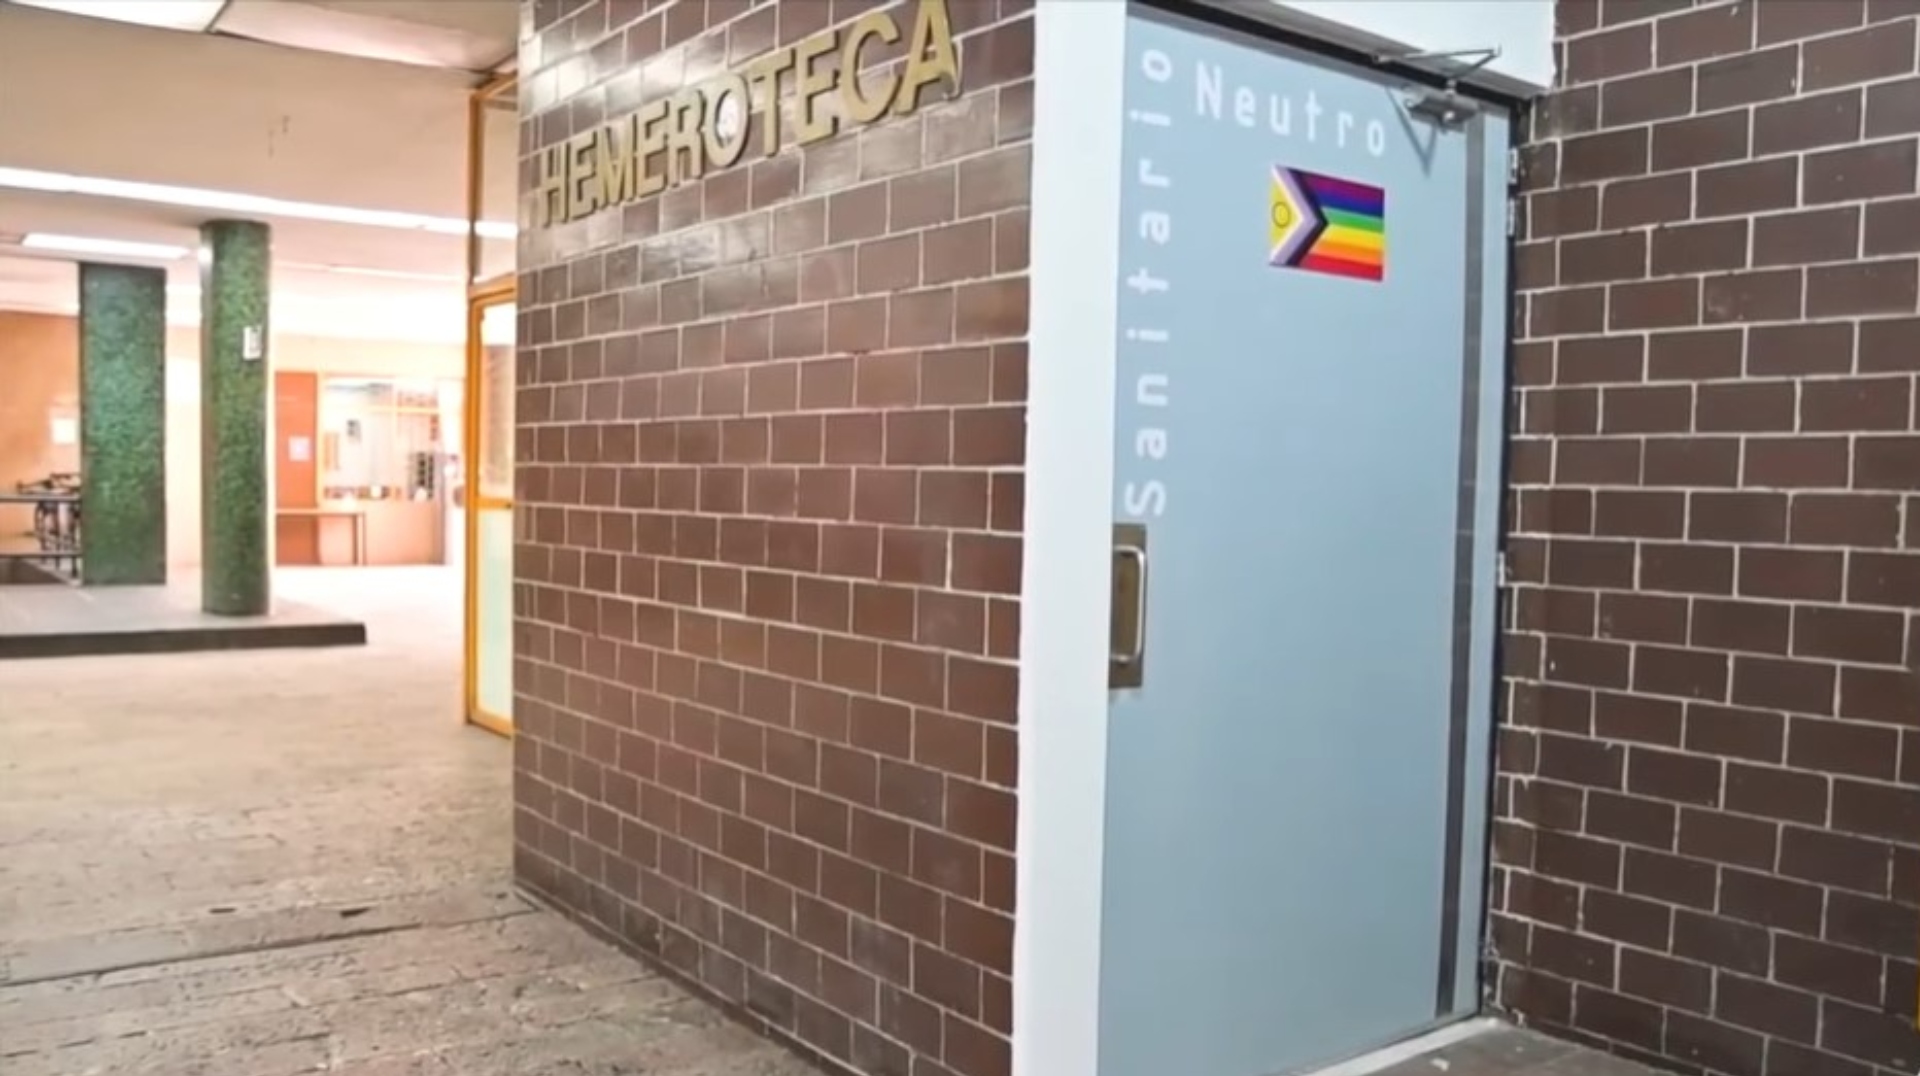 La Facultad de Química de la UNAM habilitó un baño neutro para personas que viven la identidad de género desde la diversidad. (Captura: UNAM Global)